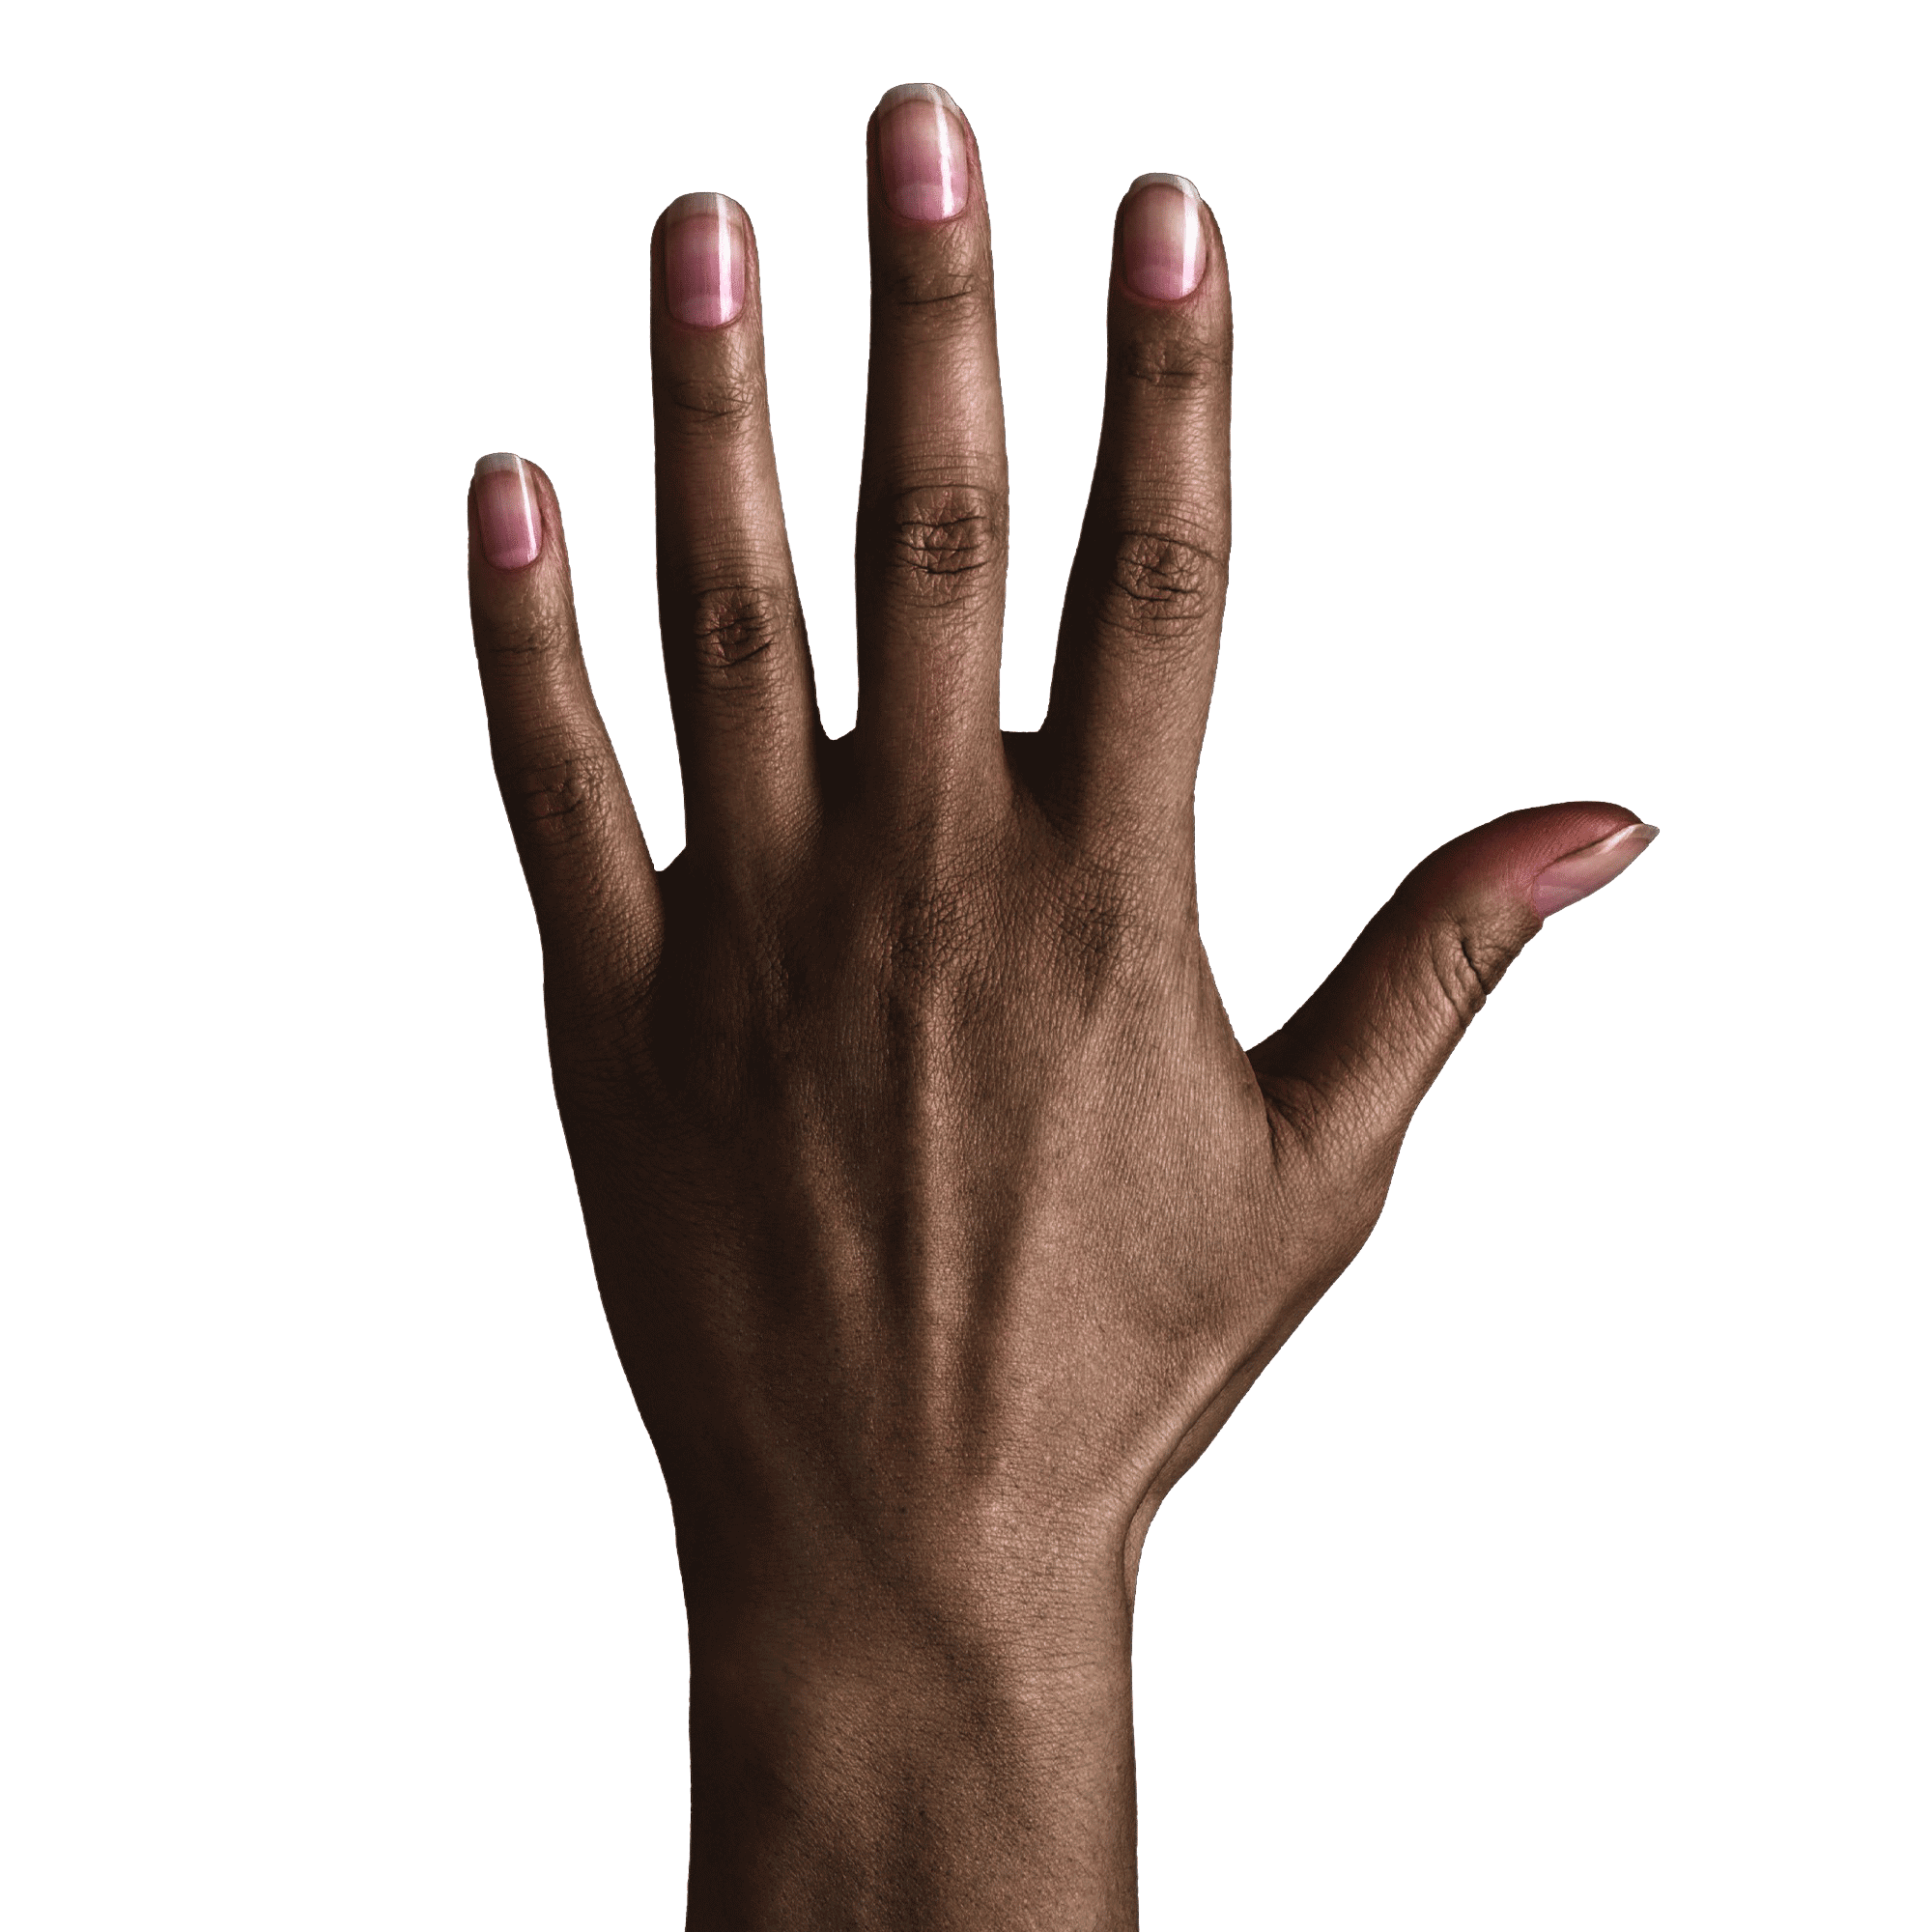 dunklerer Hautton der Hand